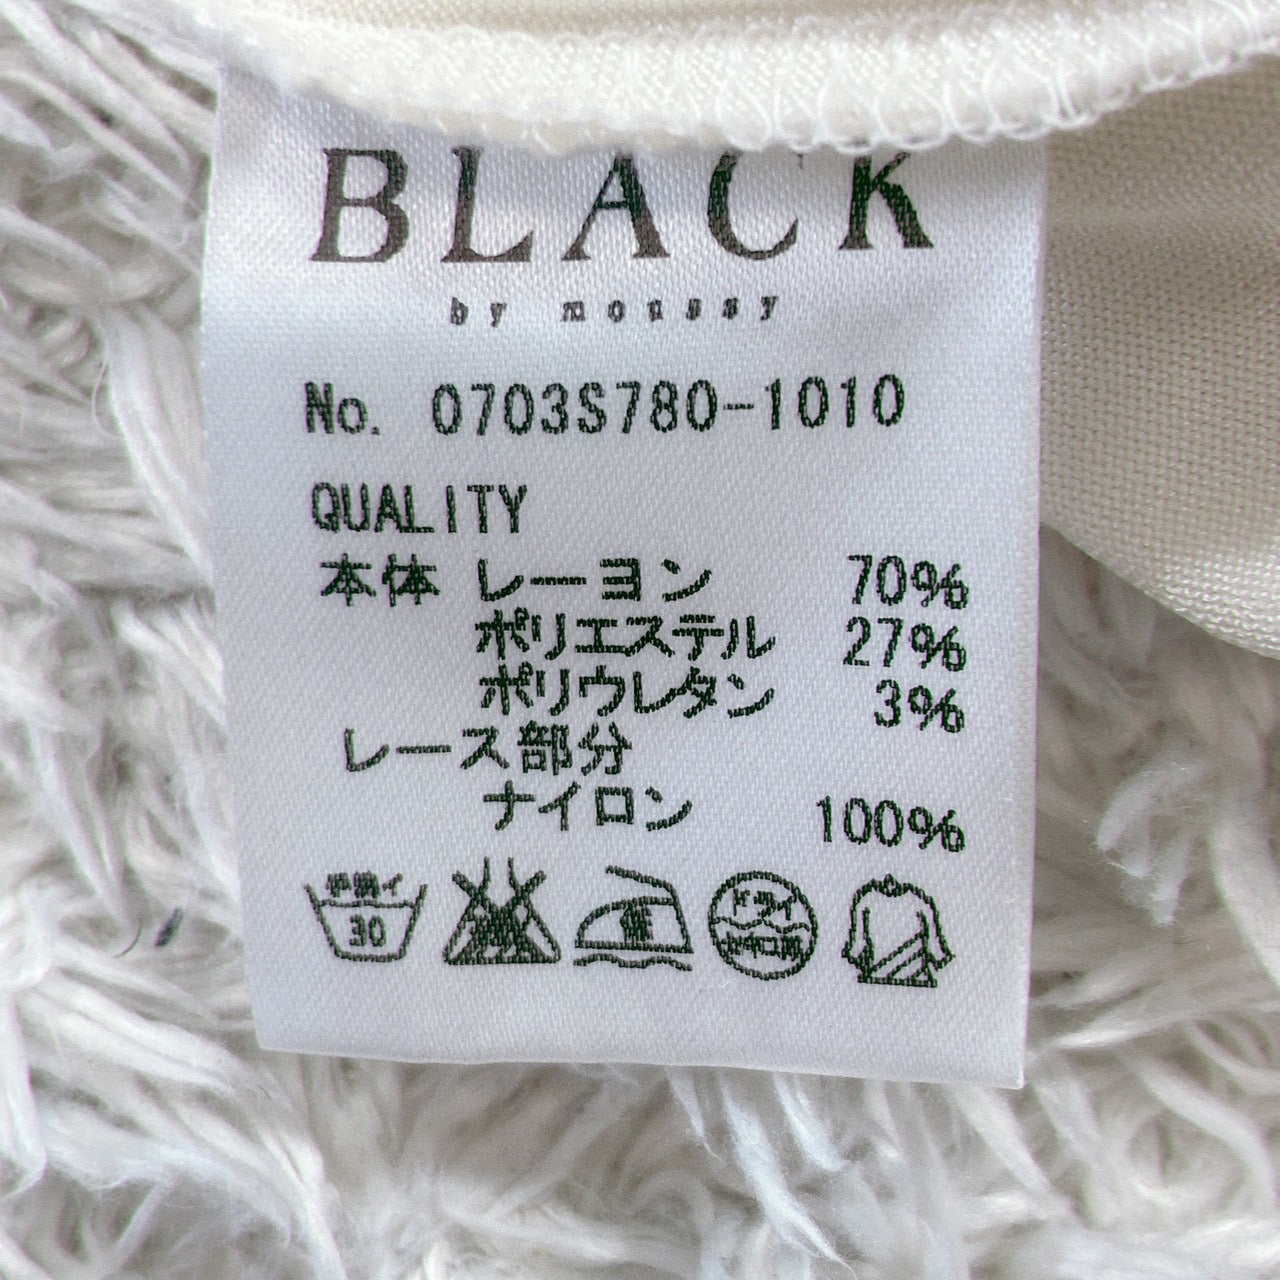 【27929】 BLACK ブラック タンクトップ サイズF 肌色 ノースリーブ Uネック レース 薄手 春夏用 軽やか 柔らかい 良品 レディース